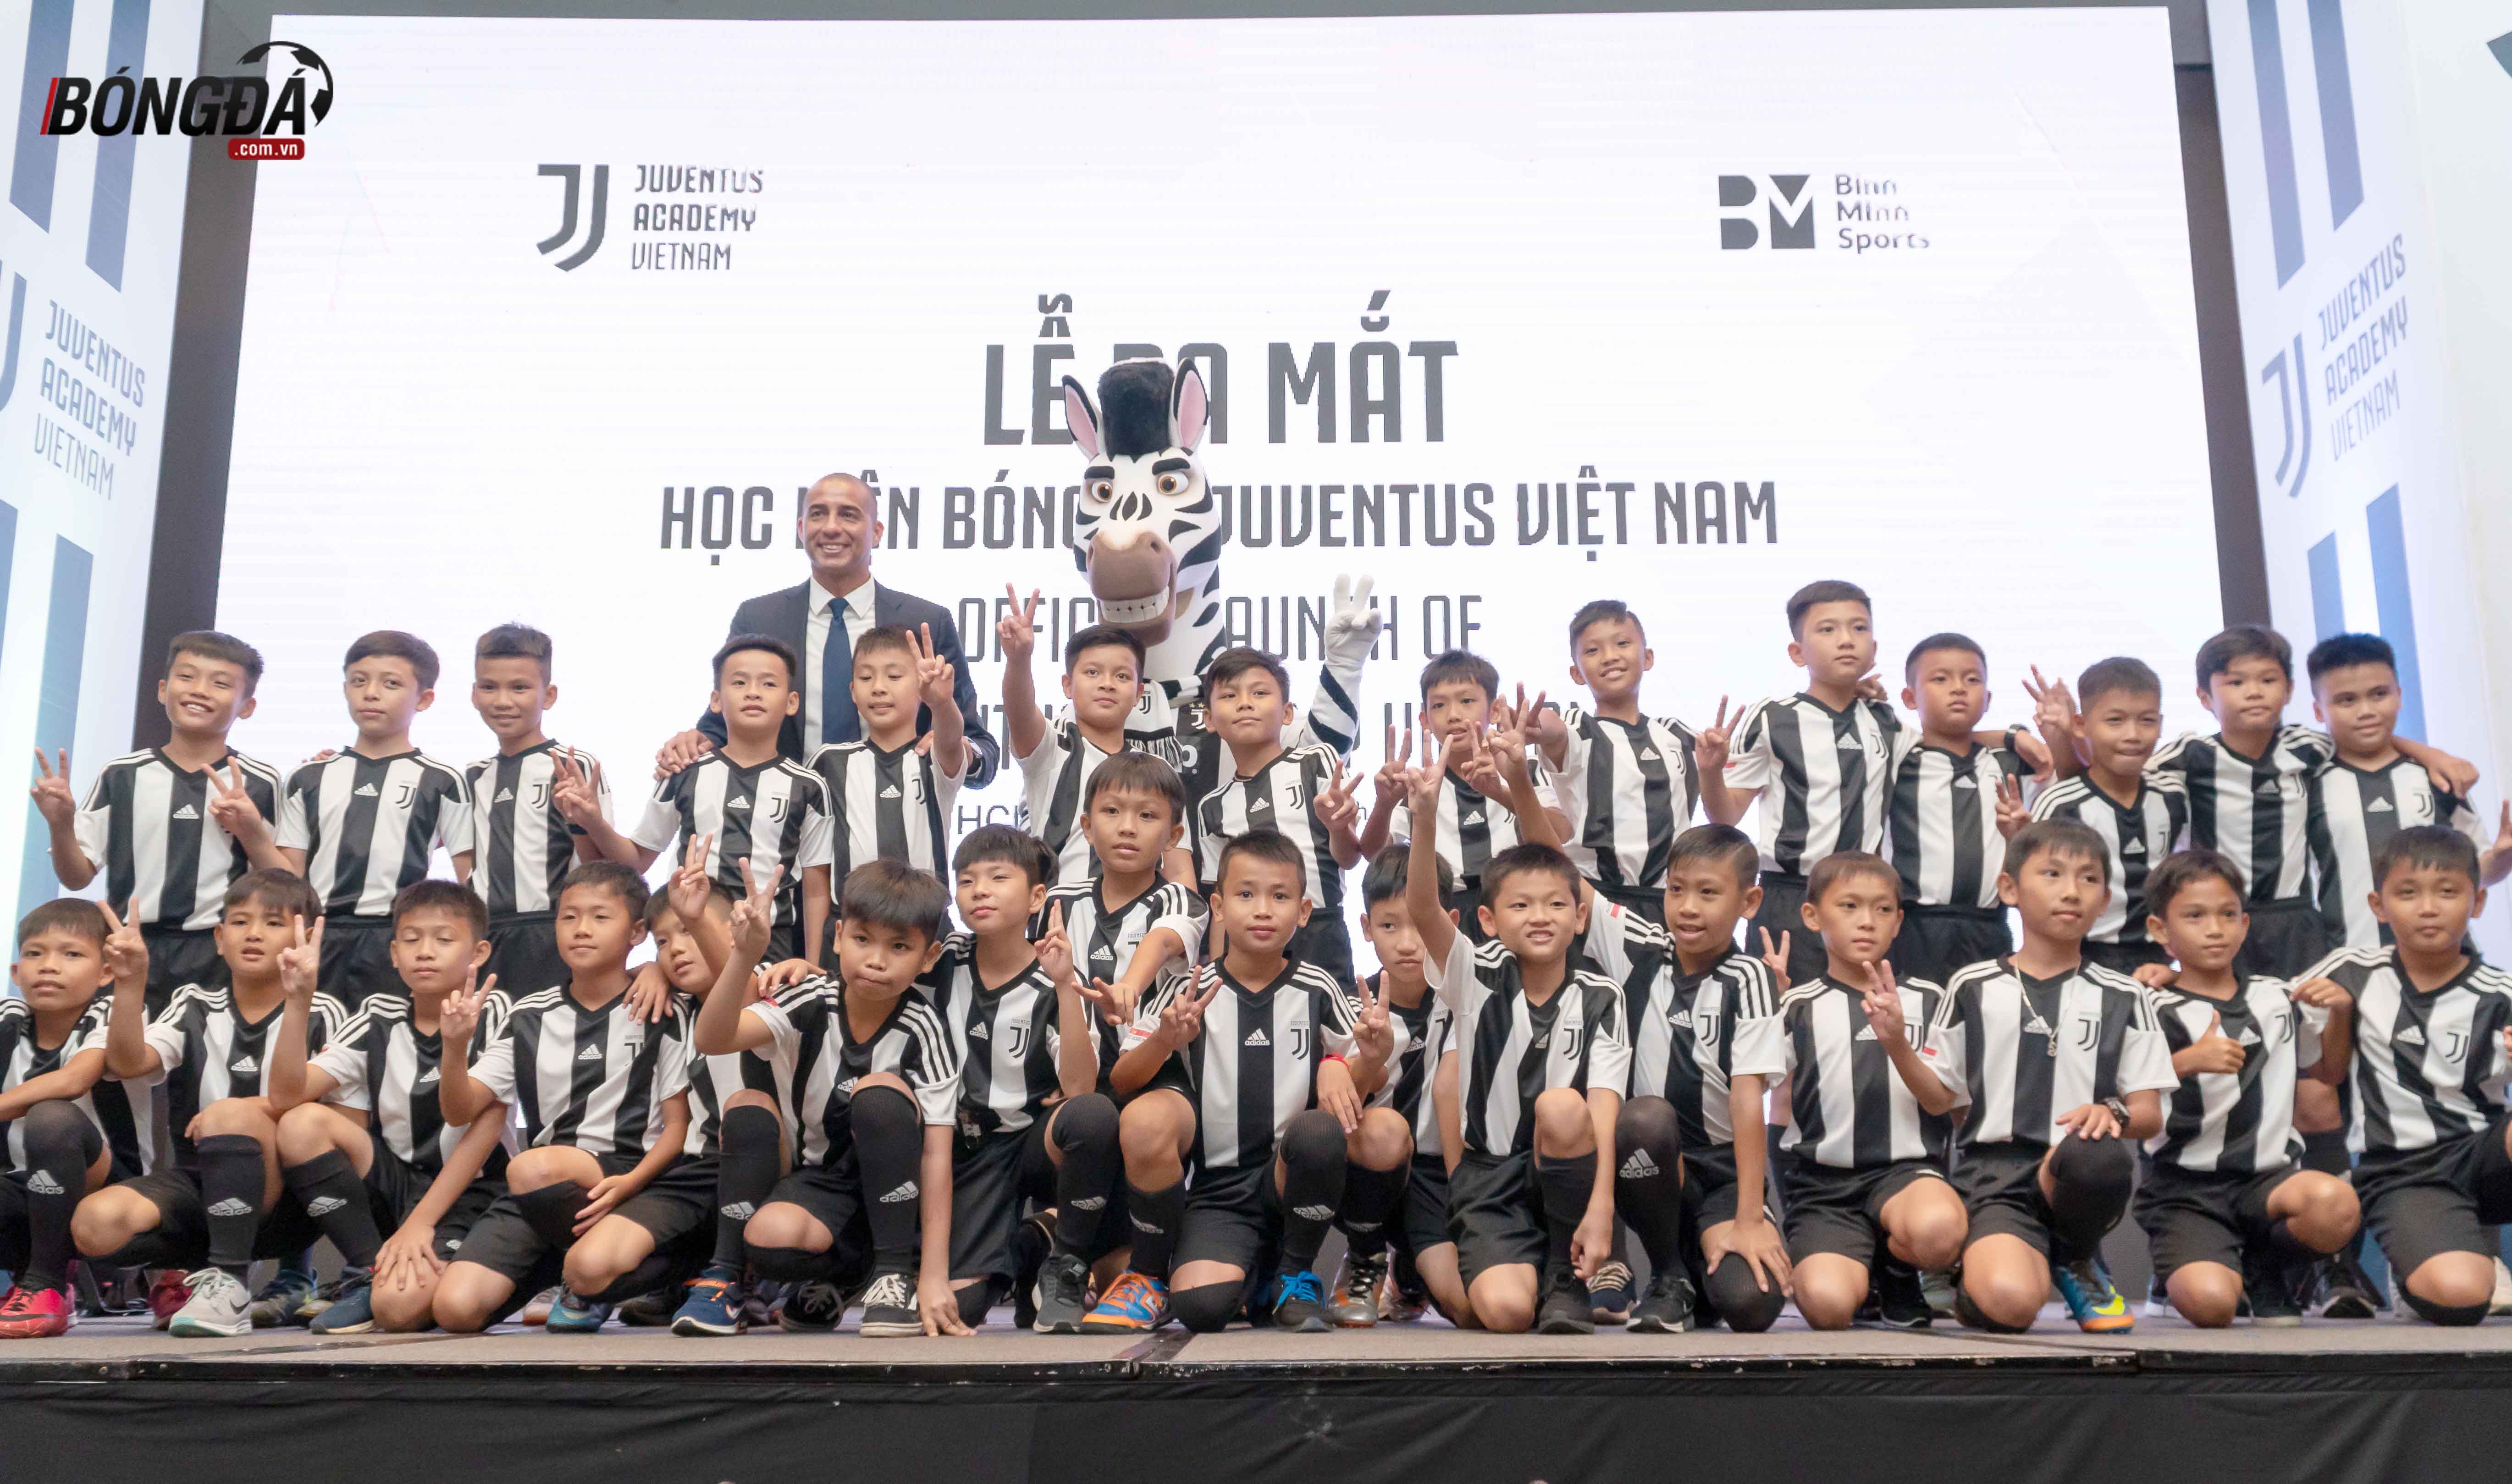 Ronaldo gửi lời nhắn đặc biệt đến học viện Juvetus tại Việt Nam - Bóng Đá